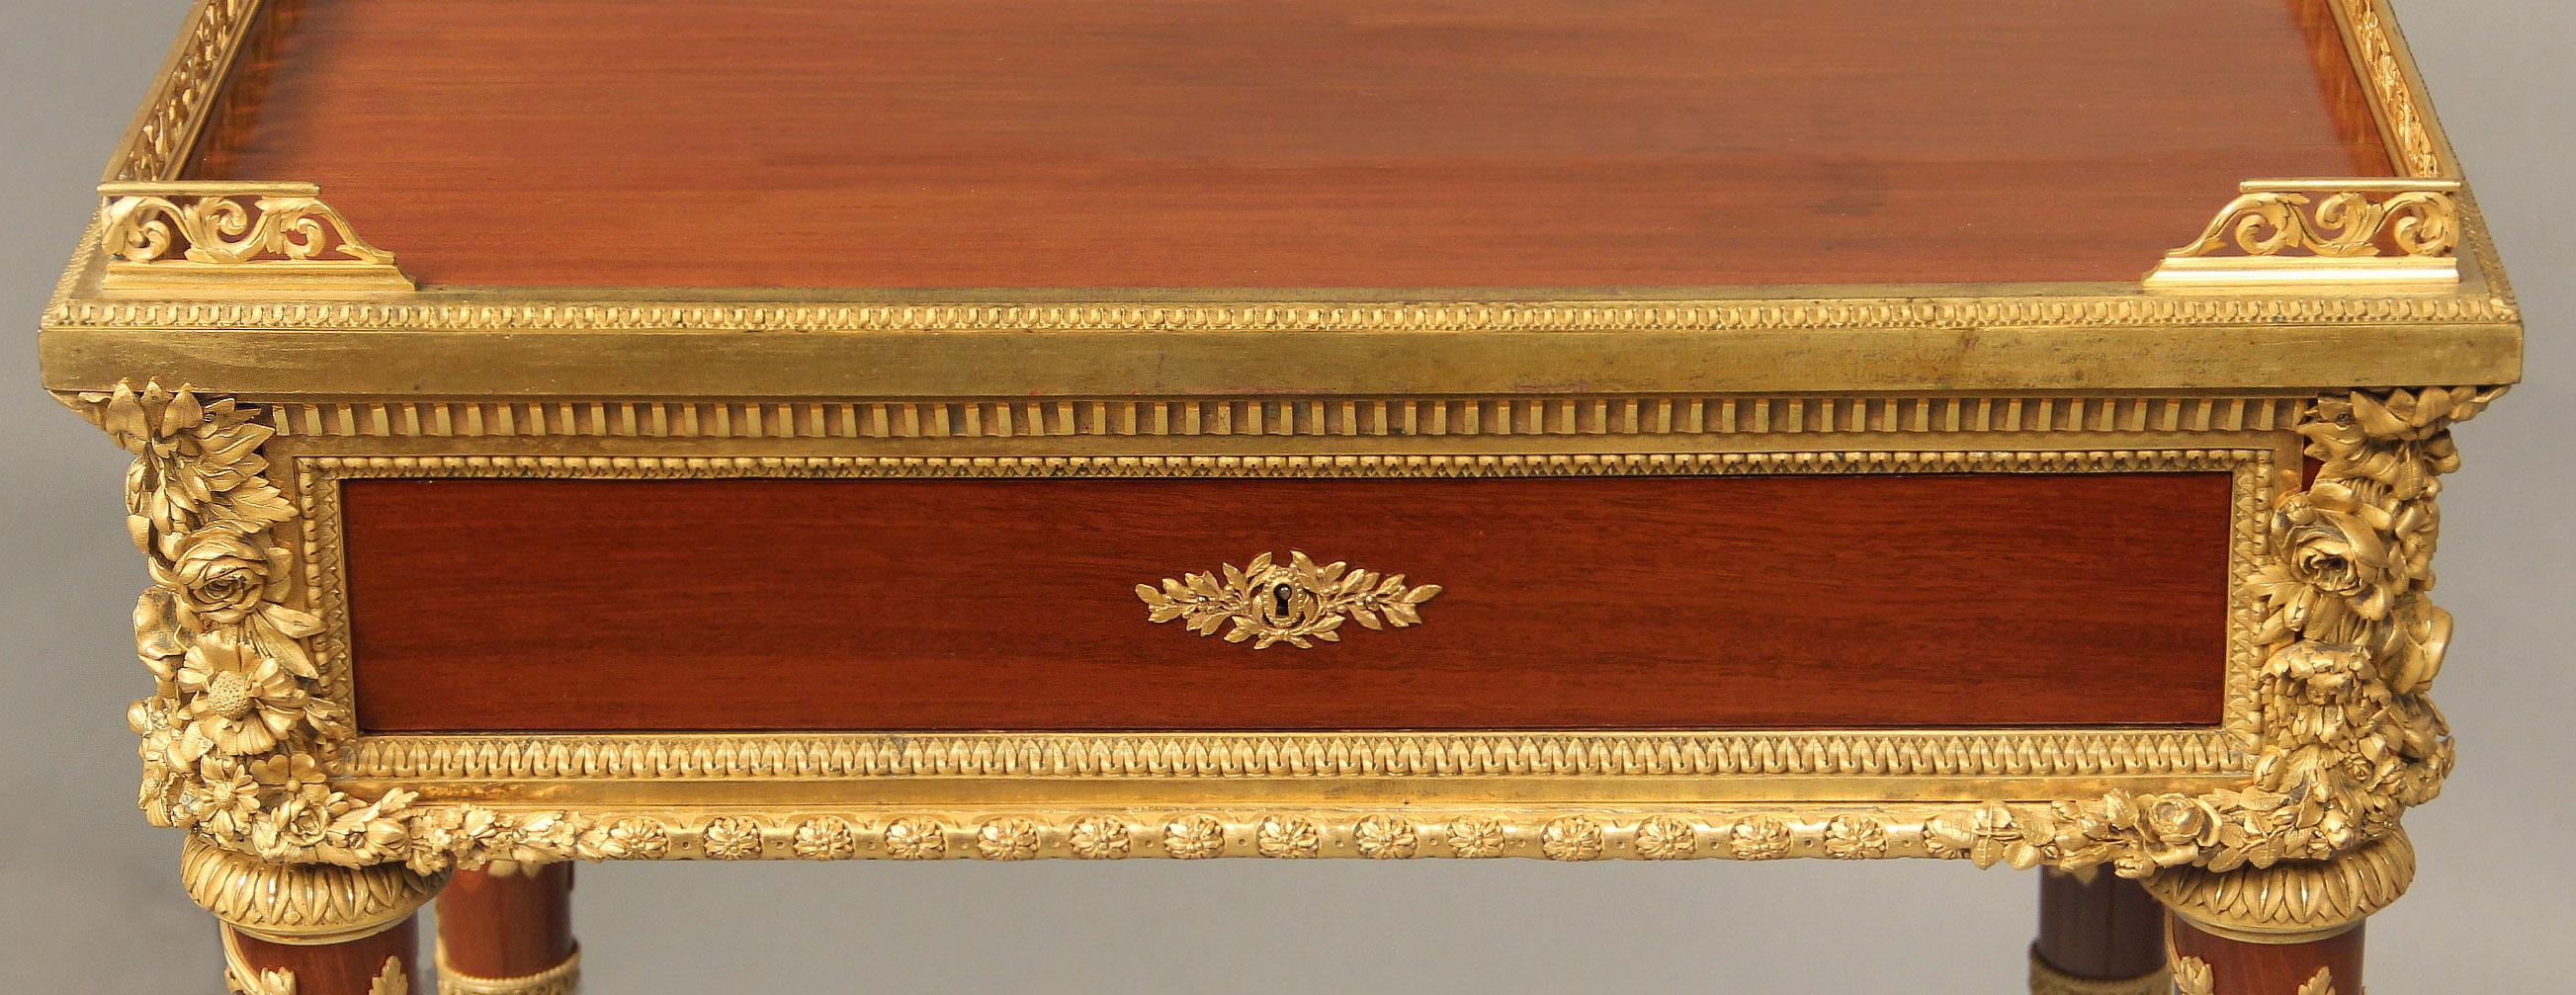 Eine ausgezeichnete Qualität Ende des 19. Jahrhunderts Louis XVI Stil vergoldete Bronze montiert Gueridon von Henry Dasson

Henry Dasson

Die rechteckige Platte mit durchbrochener Dreiviertel-Galerie, über einer einzelnen Fries-Schublade, die